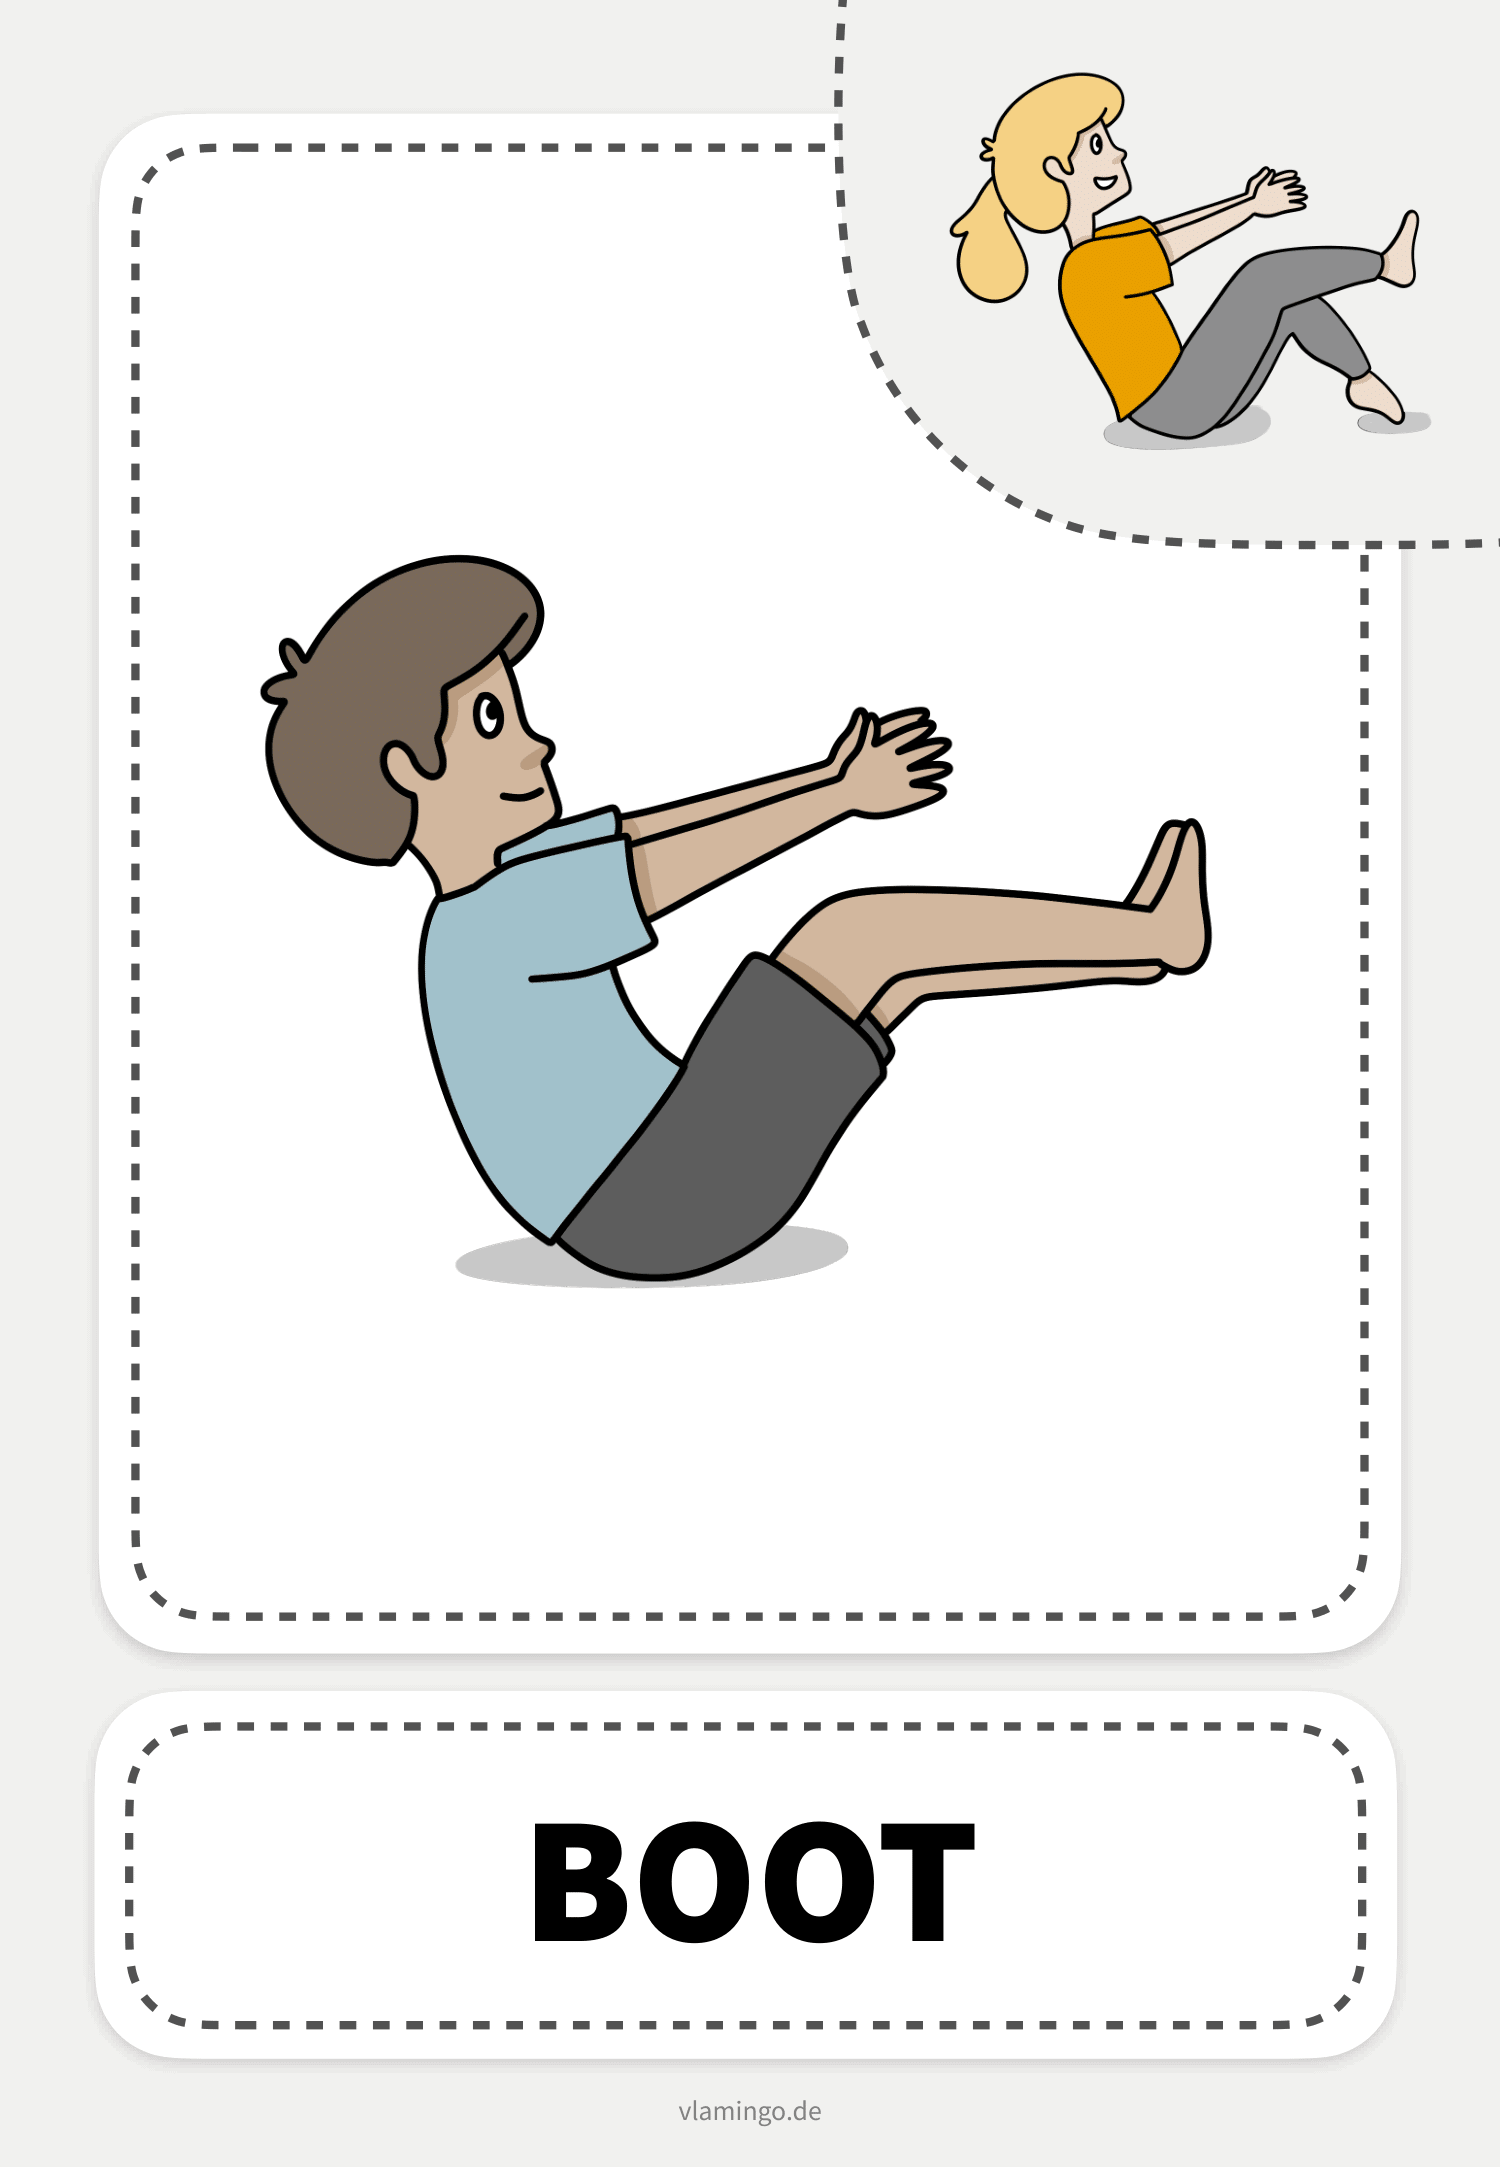 Boot - Yoga-Übung (Kinderyoga)